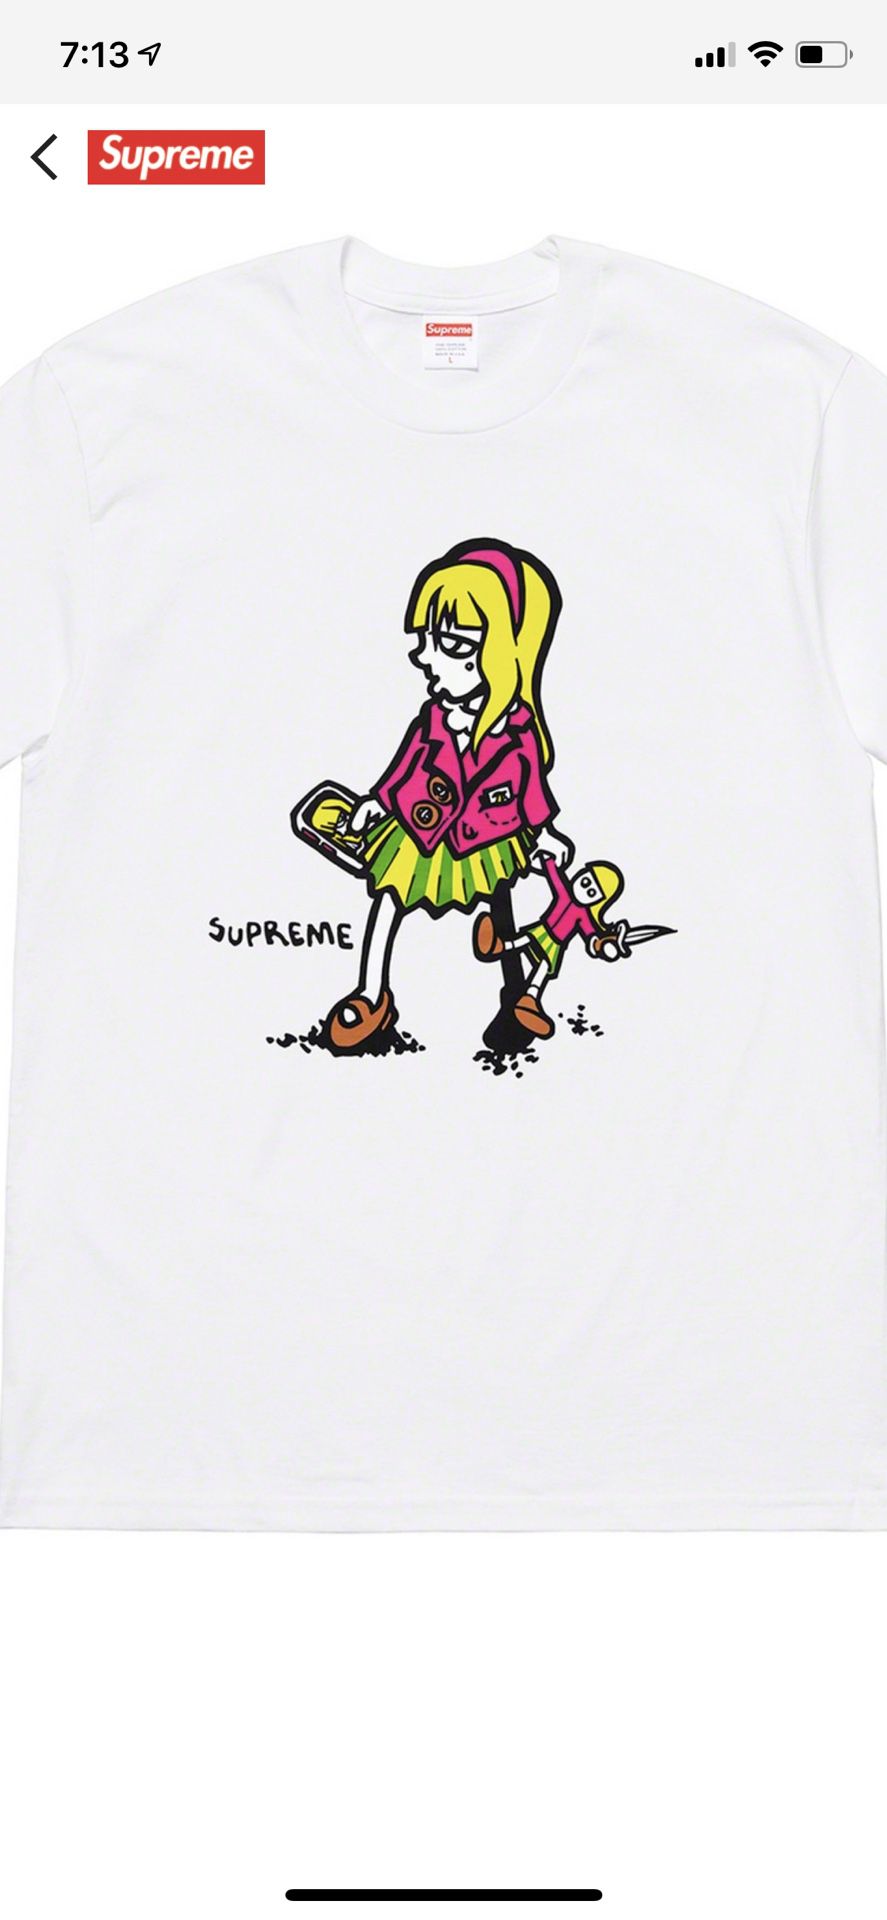 Supreme T shirt size M